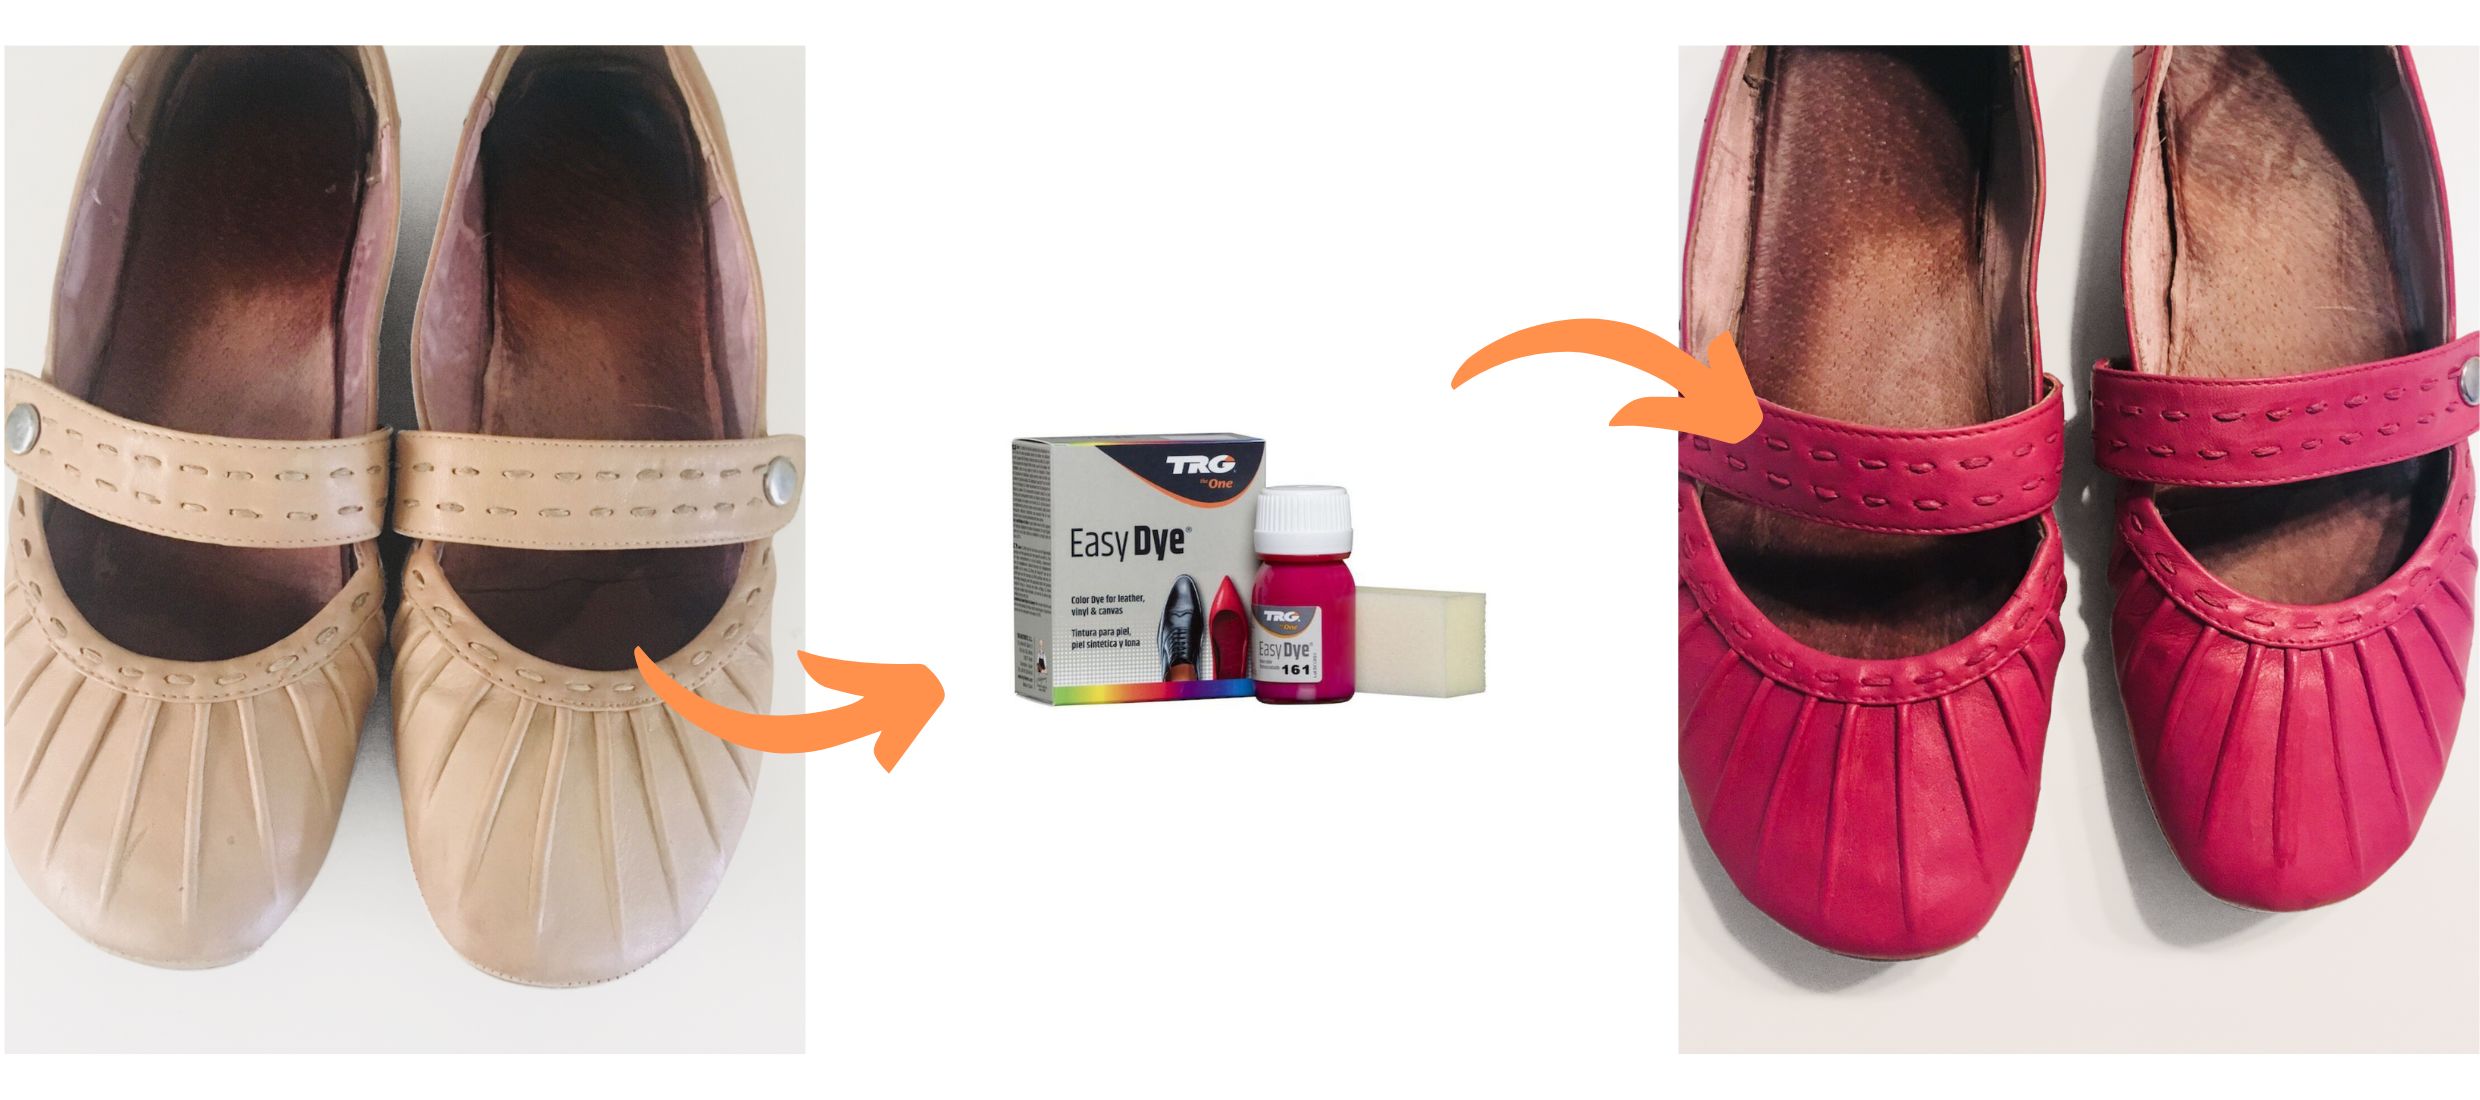 Růžová Barva na boty Easy Dye TRG Magenta 161